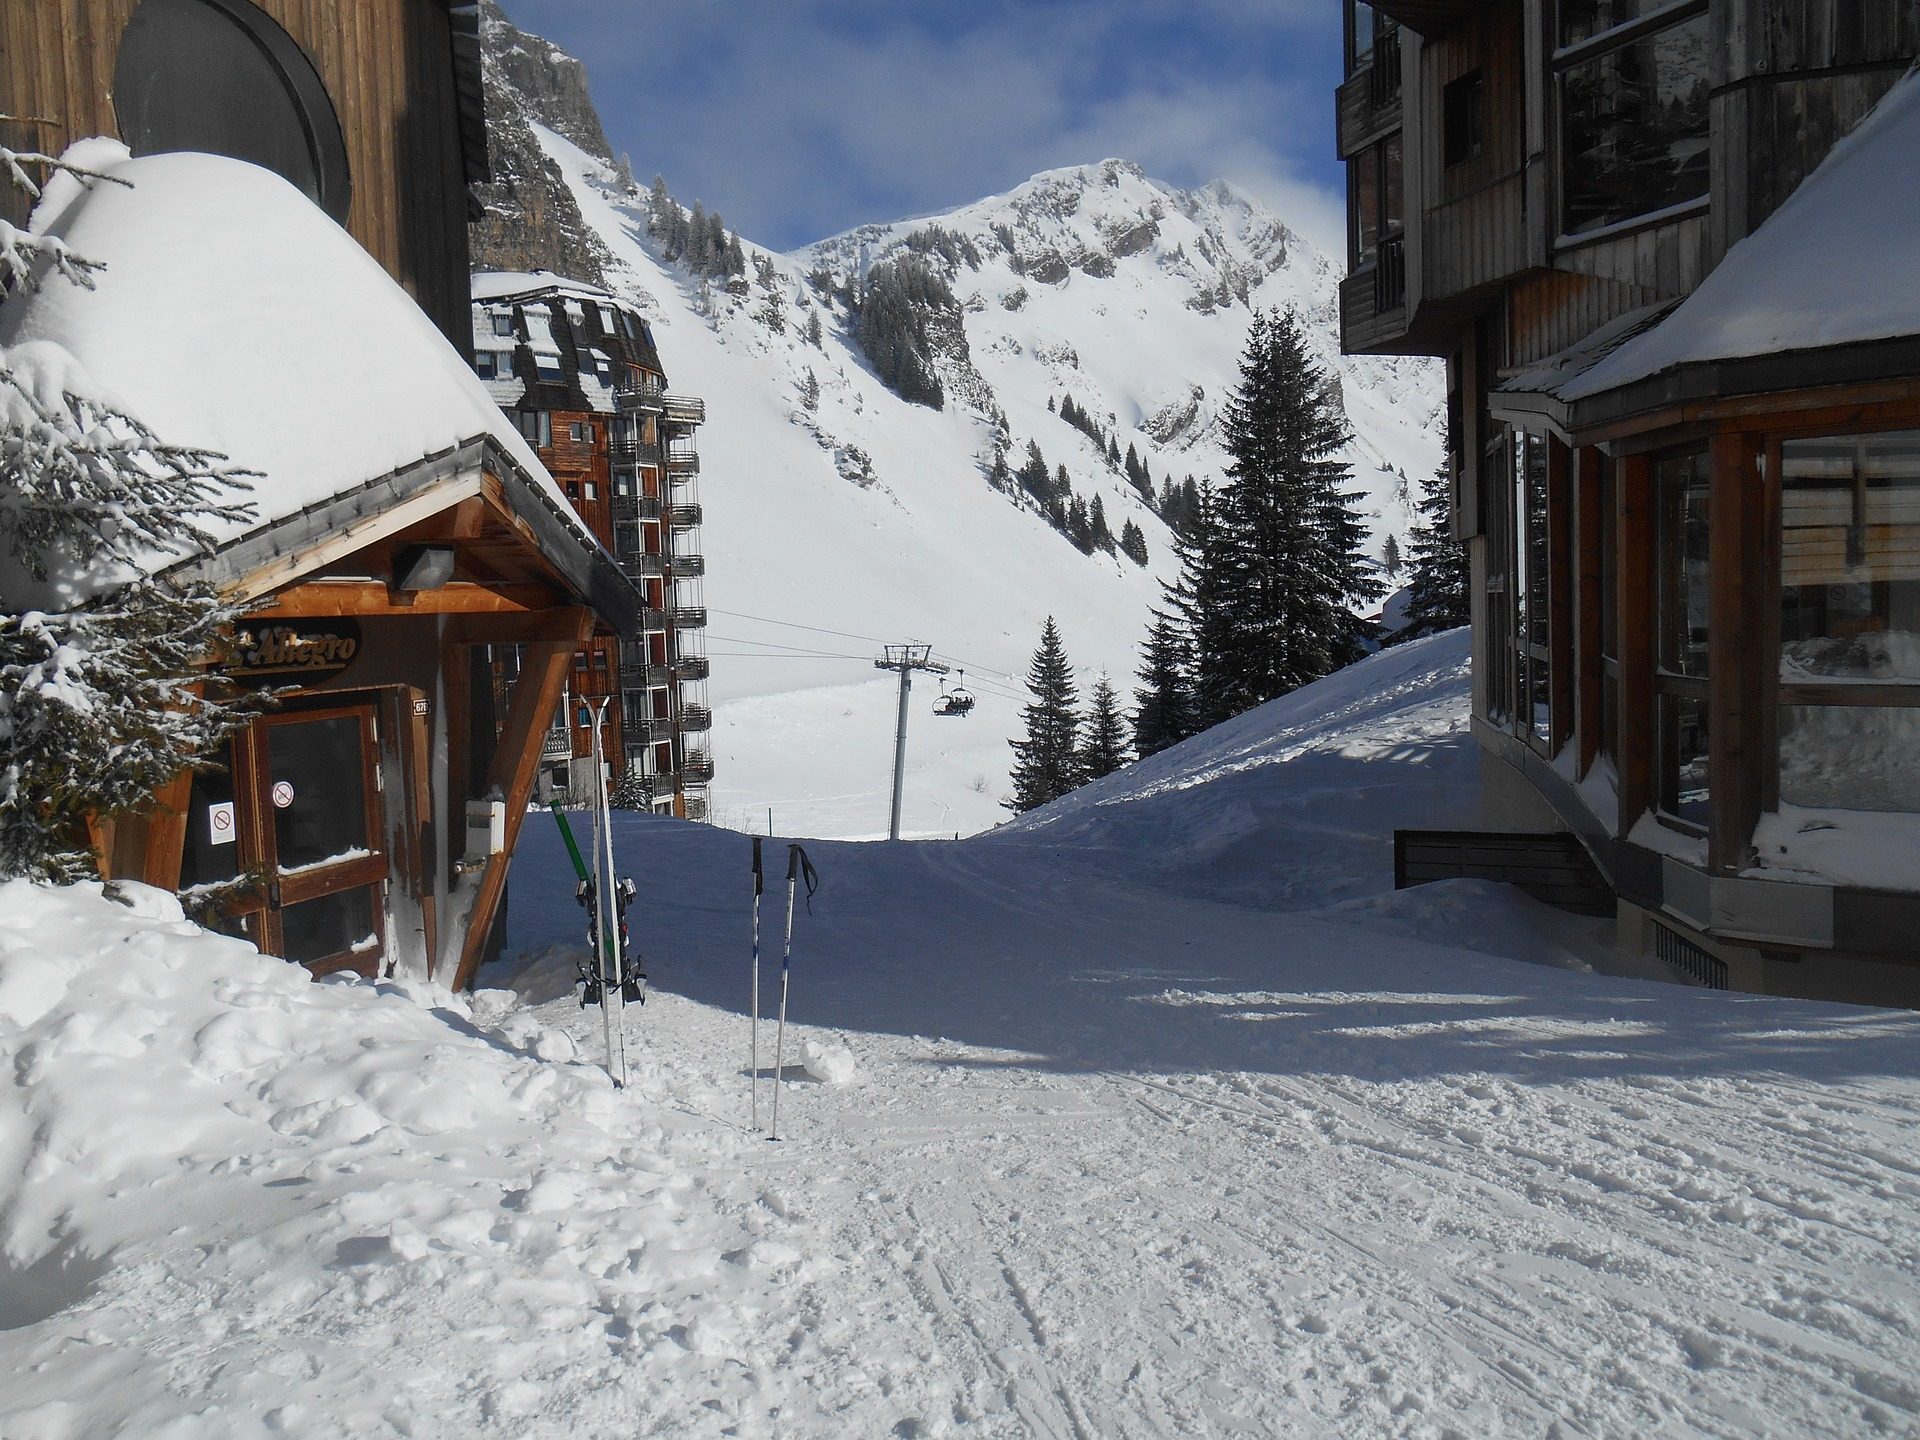 Skiurlaub in Chamrousse günstig ab 210,00€ die Woche + Skipass